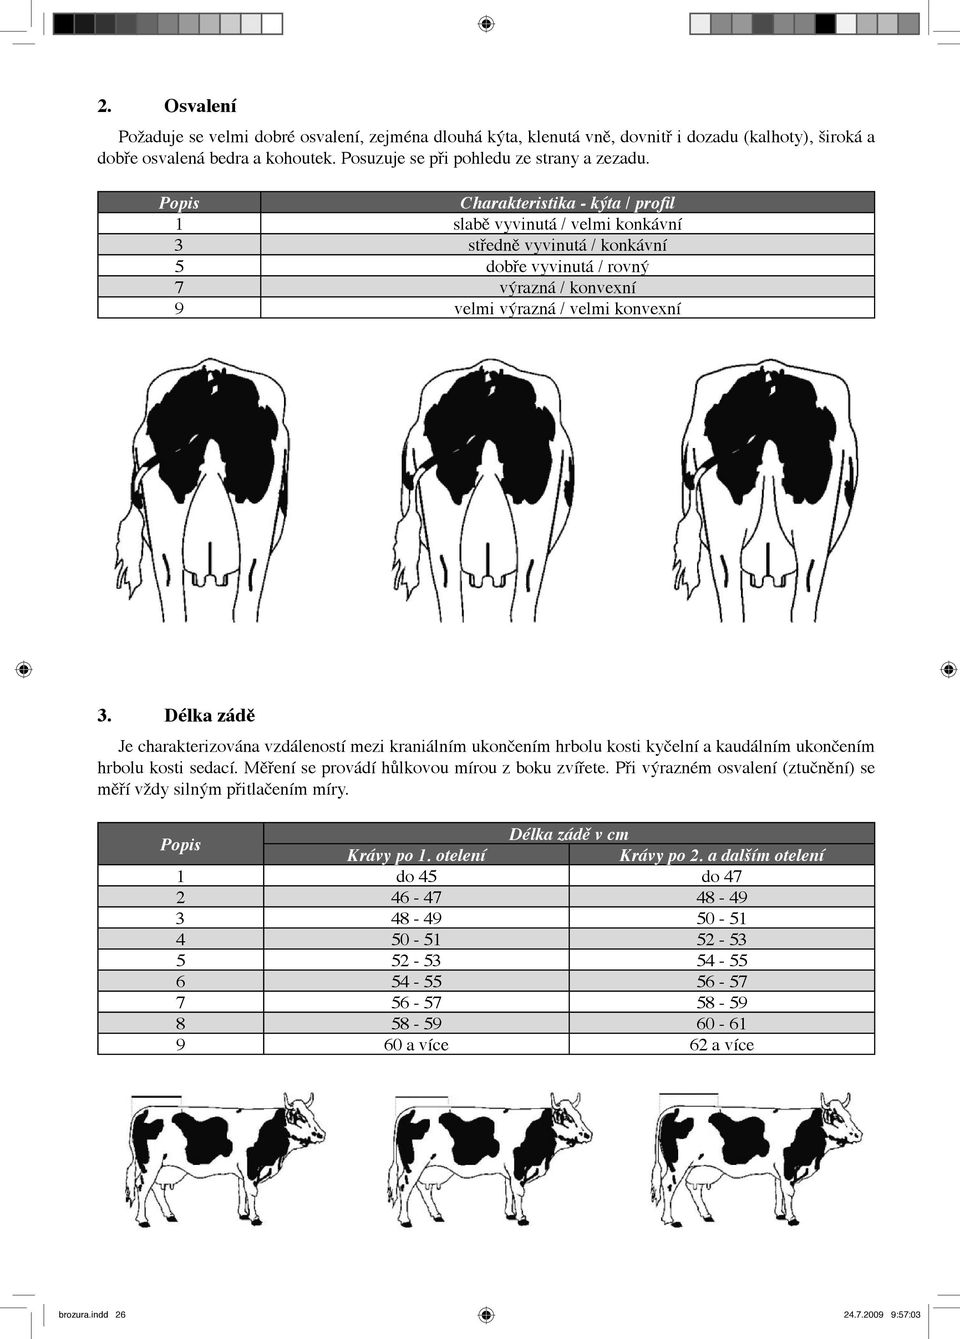 Délka zádě Je charakterizována vzdáleností mezi kraniálním ukončením hrbolu kosti kyčelní a kaudálním ukončením hrbolu kosti sedací. Měření se provádí hůlkovou mírou z boku zvířete.